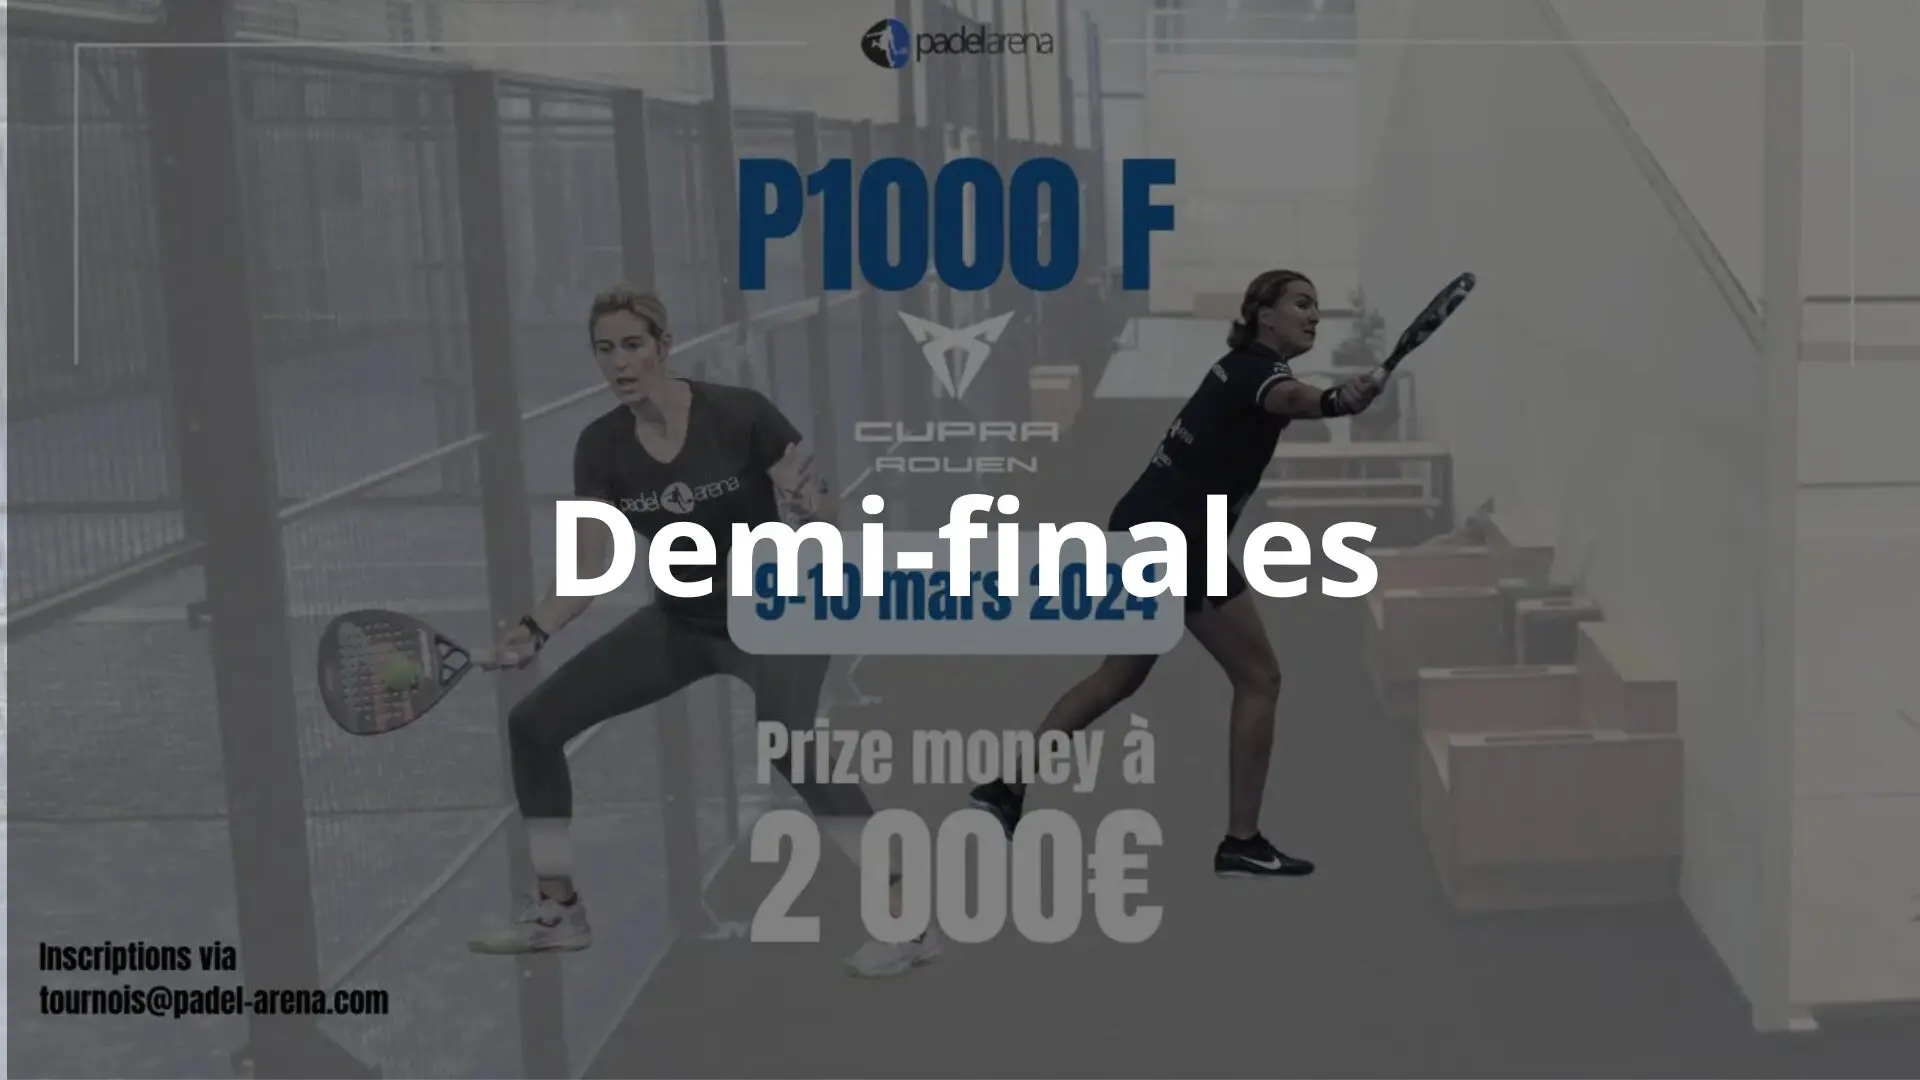 P1000 Padel Arena Cupra Rouen – Początek półfinału na żywo!